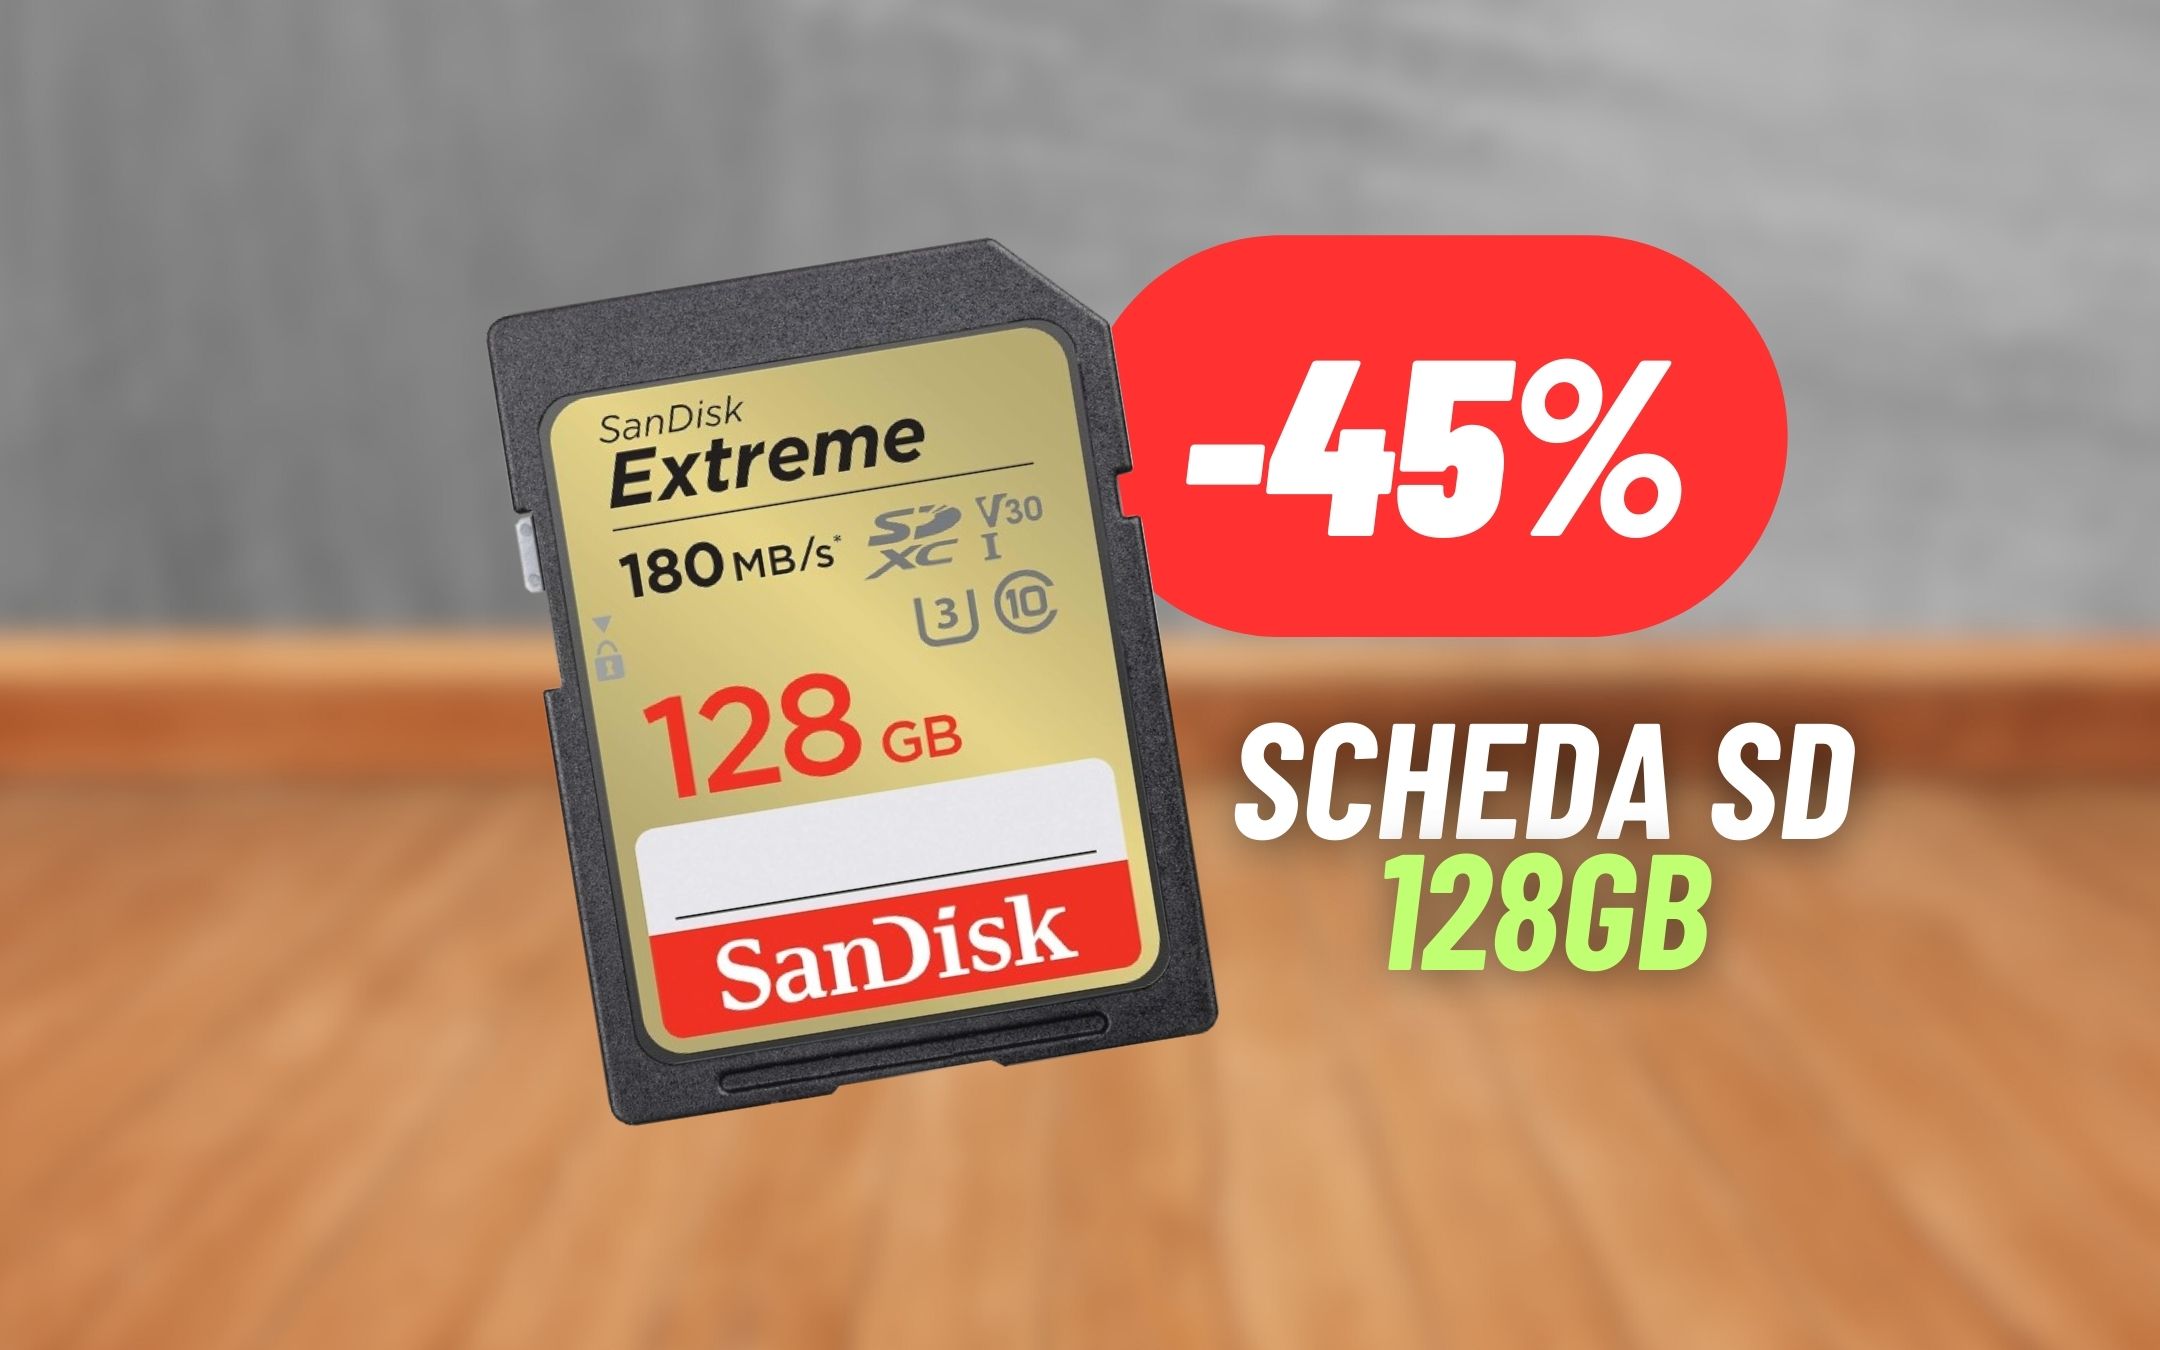 Scheda SD al 45% di sconto:  lancia la promo sul prodotto SanDisk